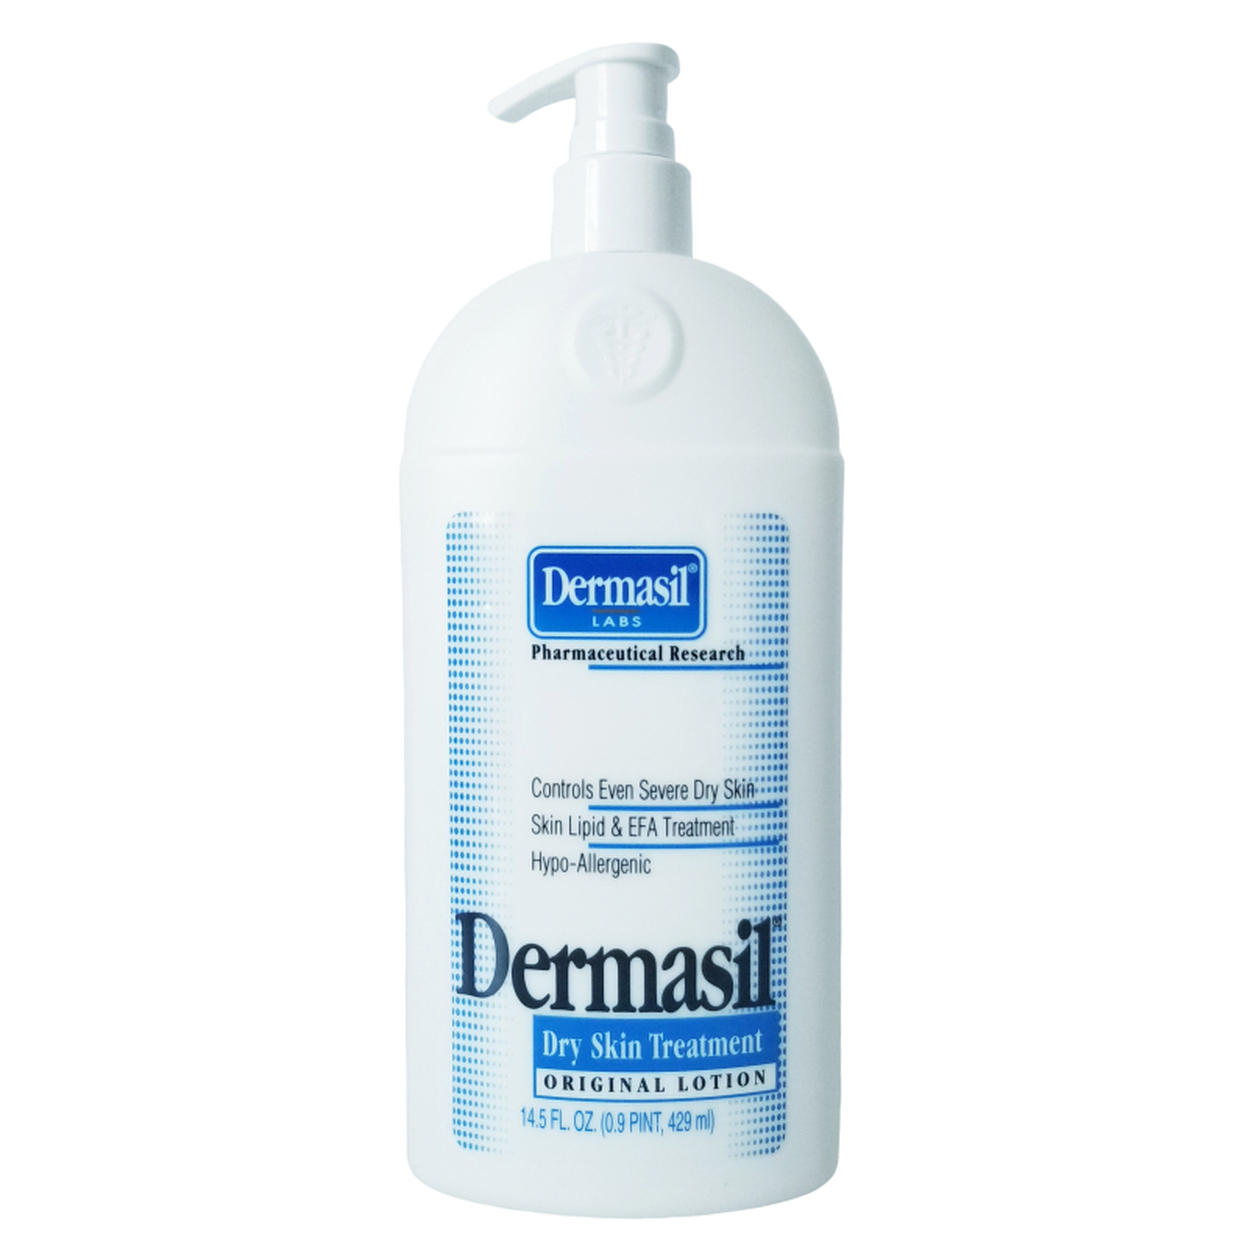 Dermasil Labs Original Lotion Dry Skin Treatment 145 Fl Oz 429ml